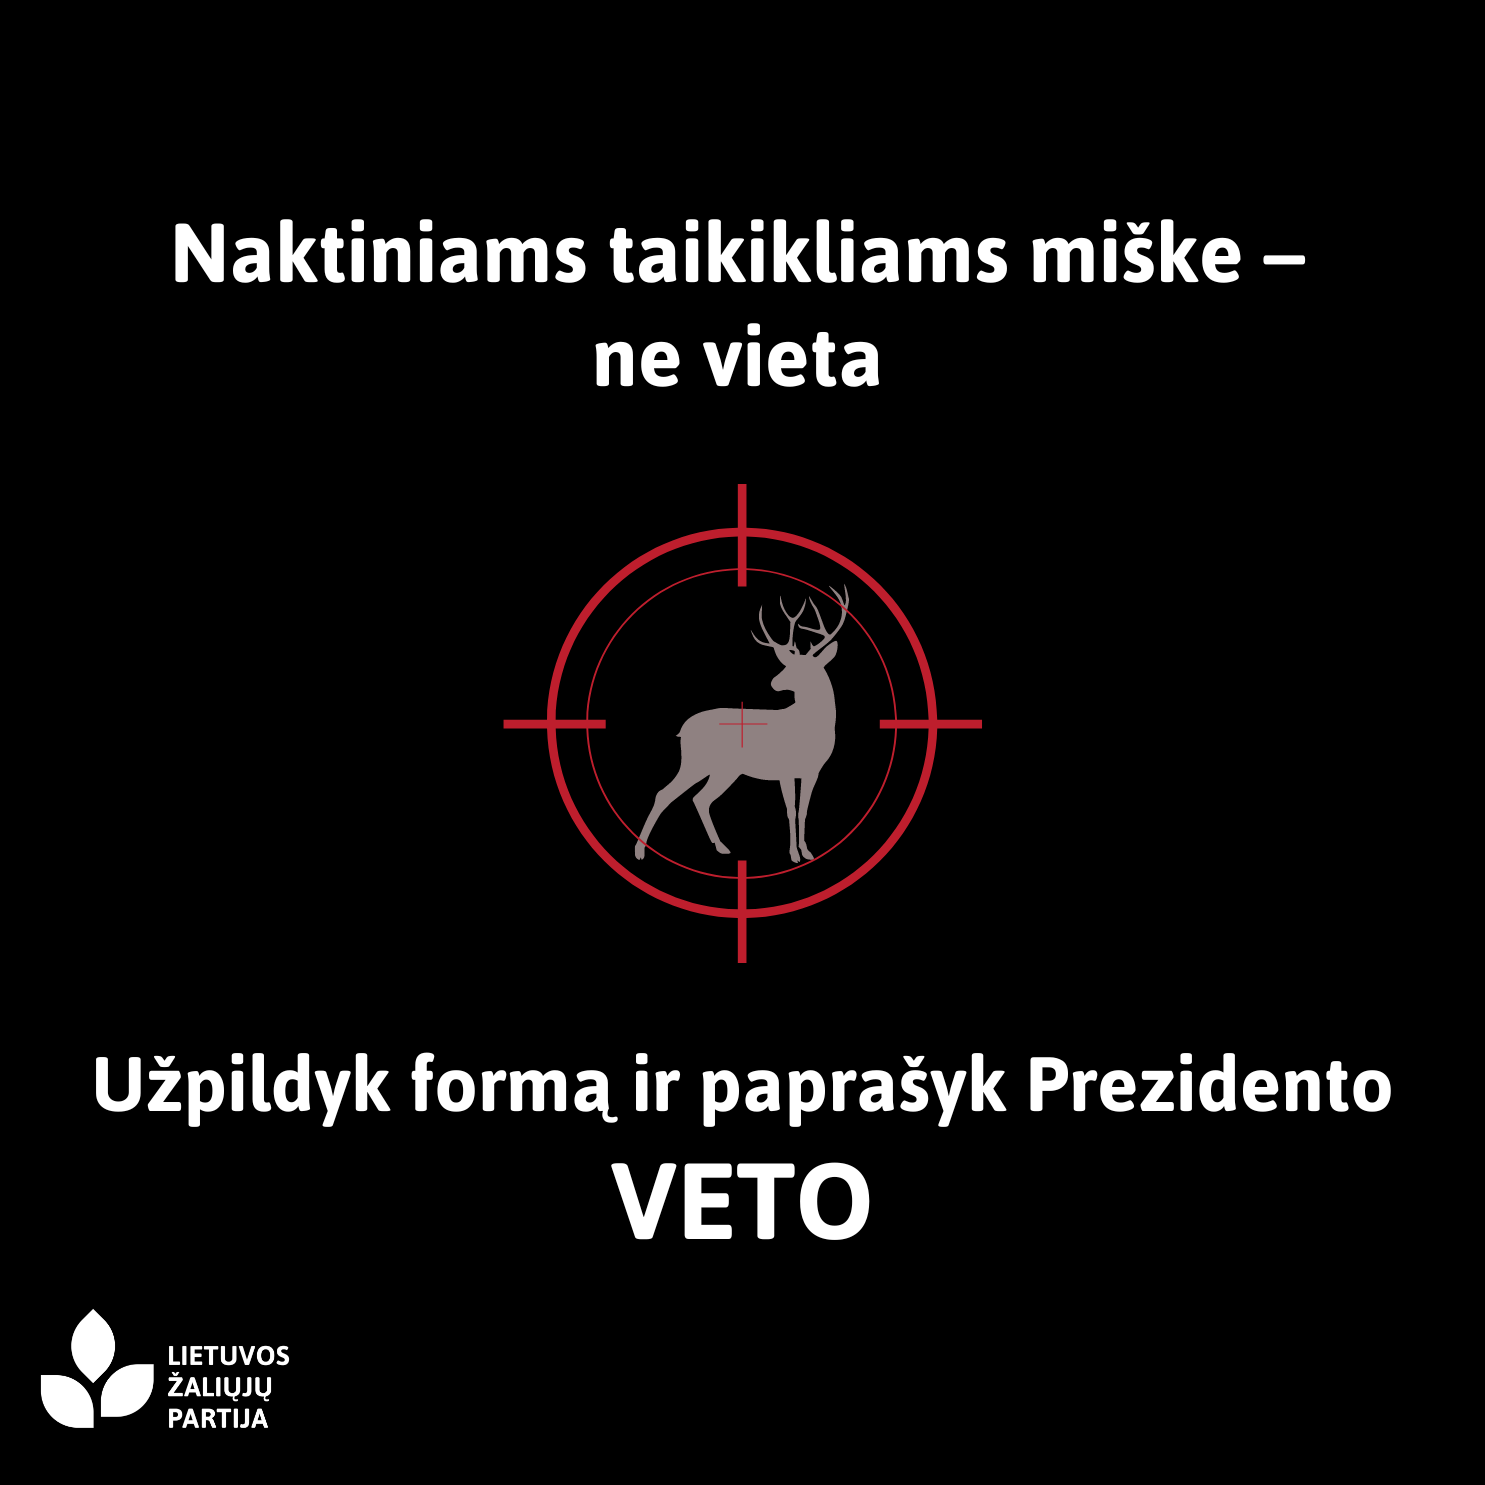 Read more about the article Seimui įteisinus naktinius taikiklius medžioklėje, žalieji ragina gyventojus prašyti prezidento veto